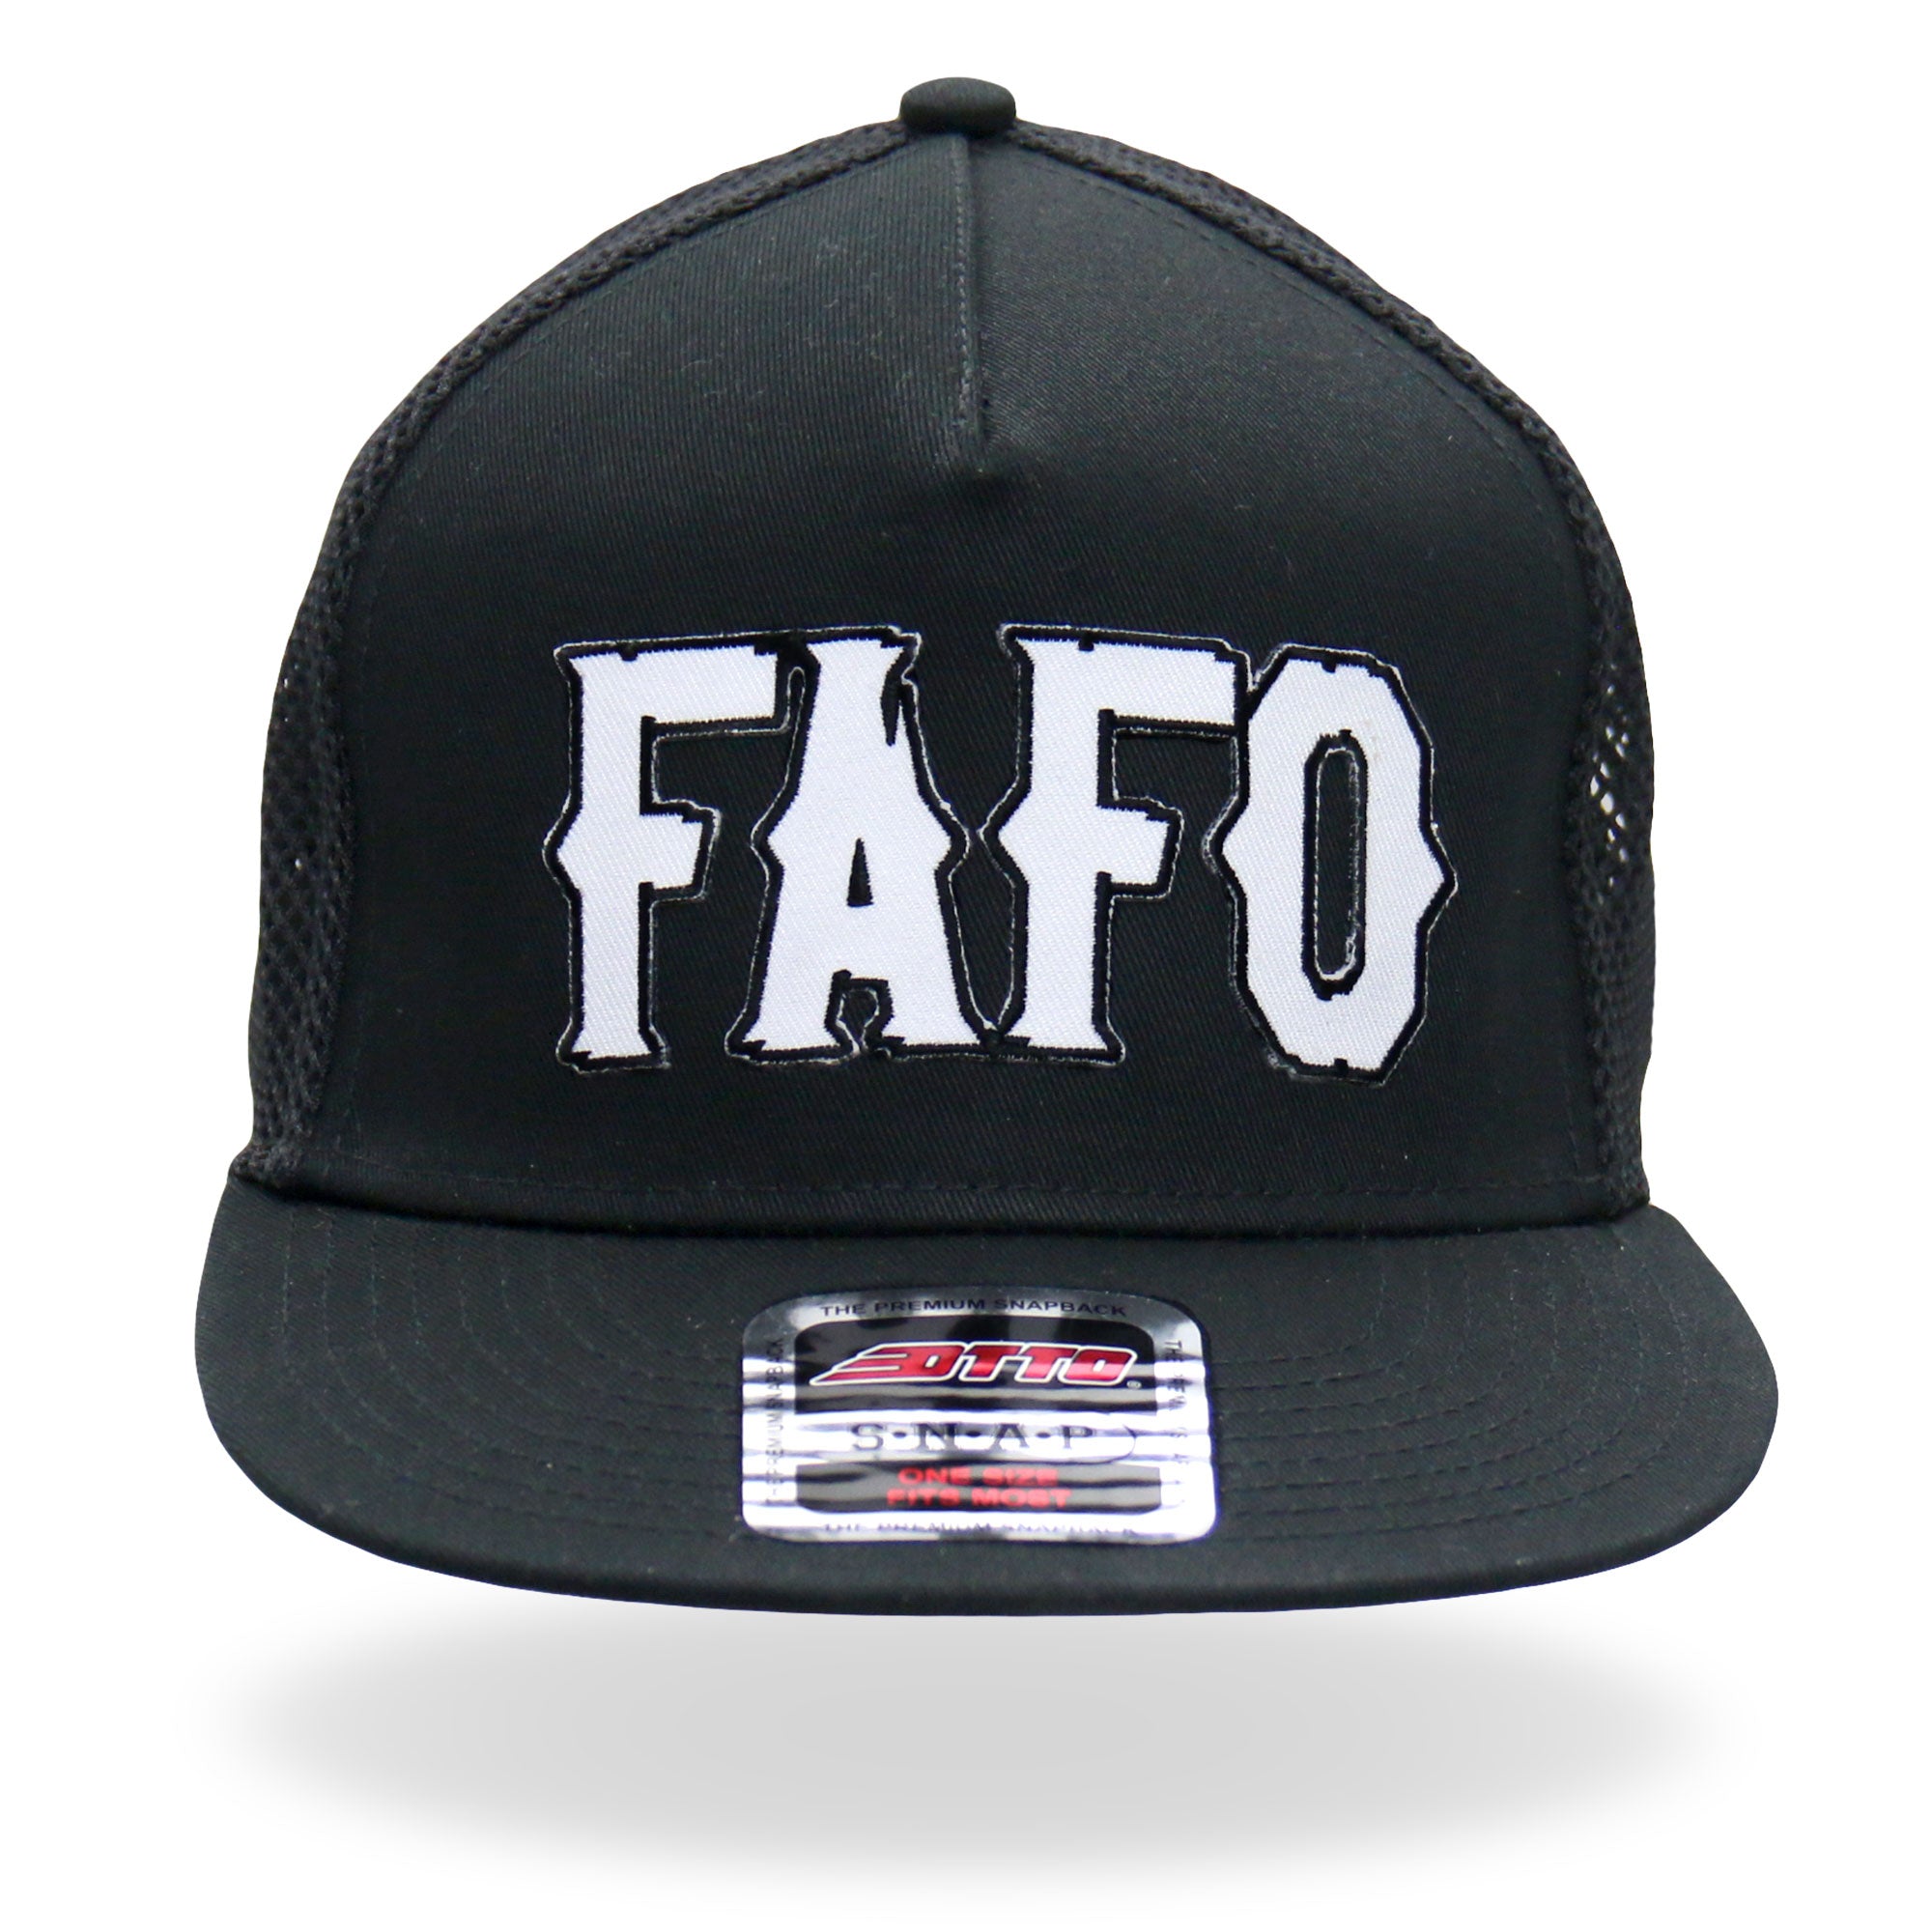 FAFO Patch Snapback